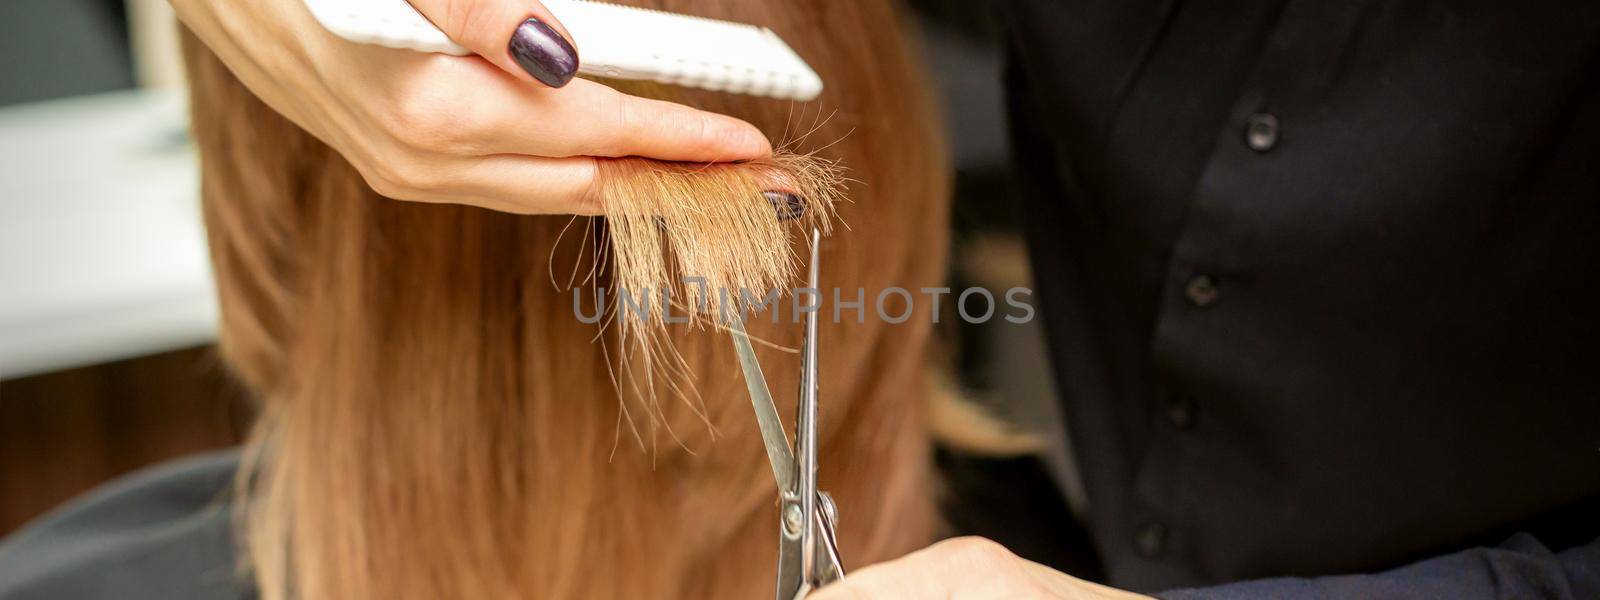 Hairdresser cuts tips female hair by okskukuruza